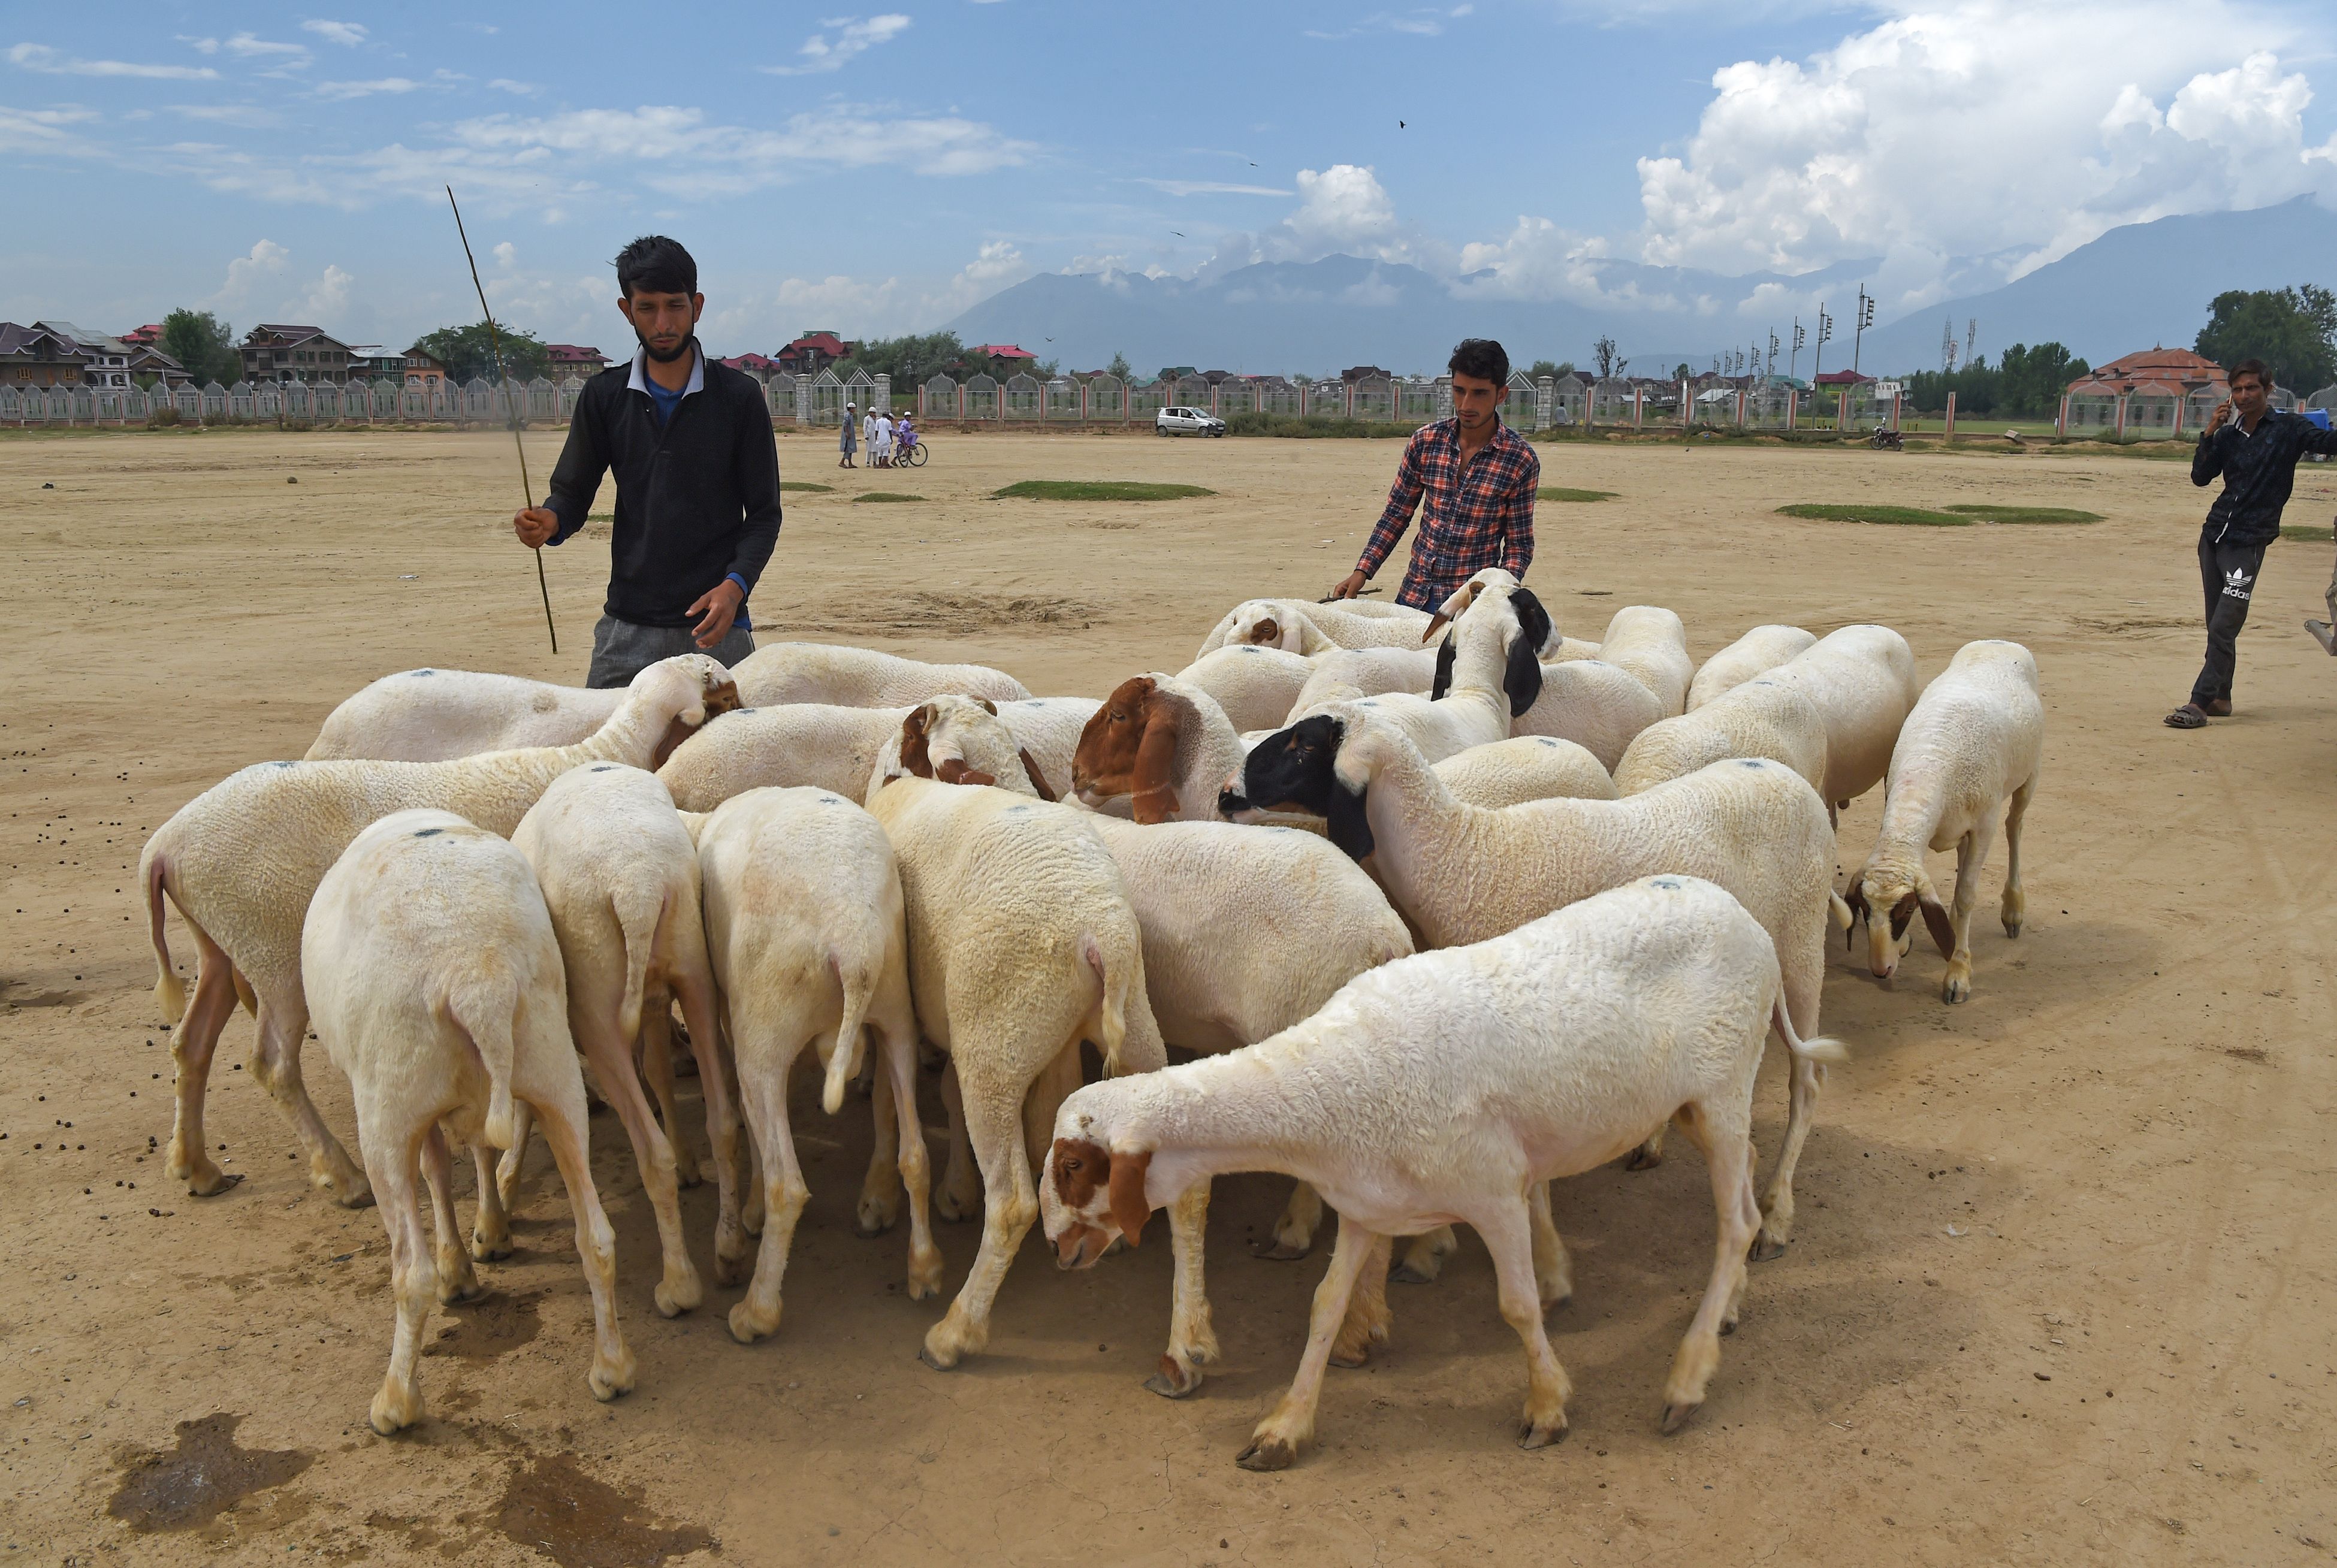 أسوق الماشية فى الهند